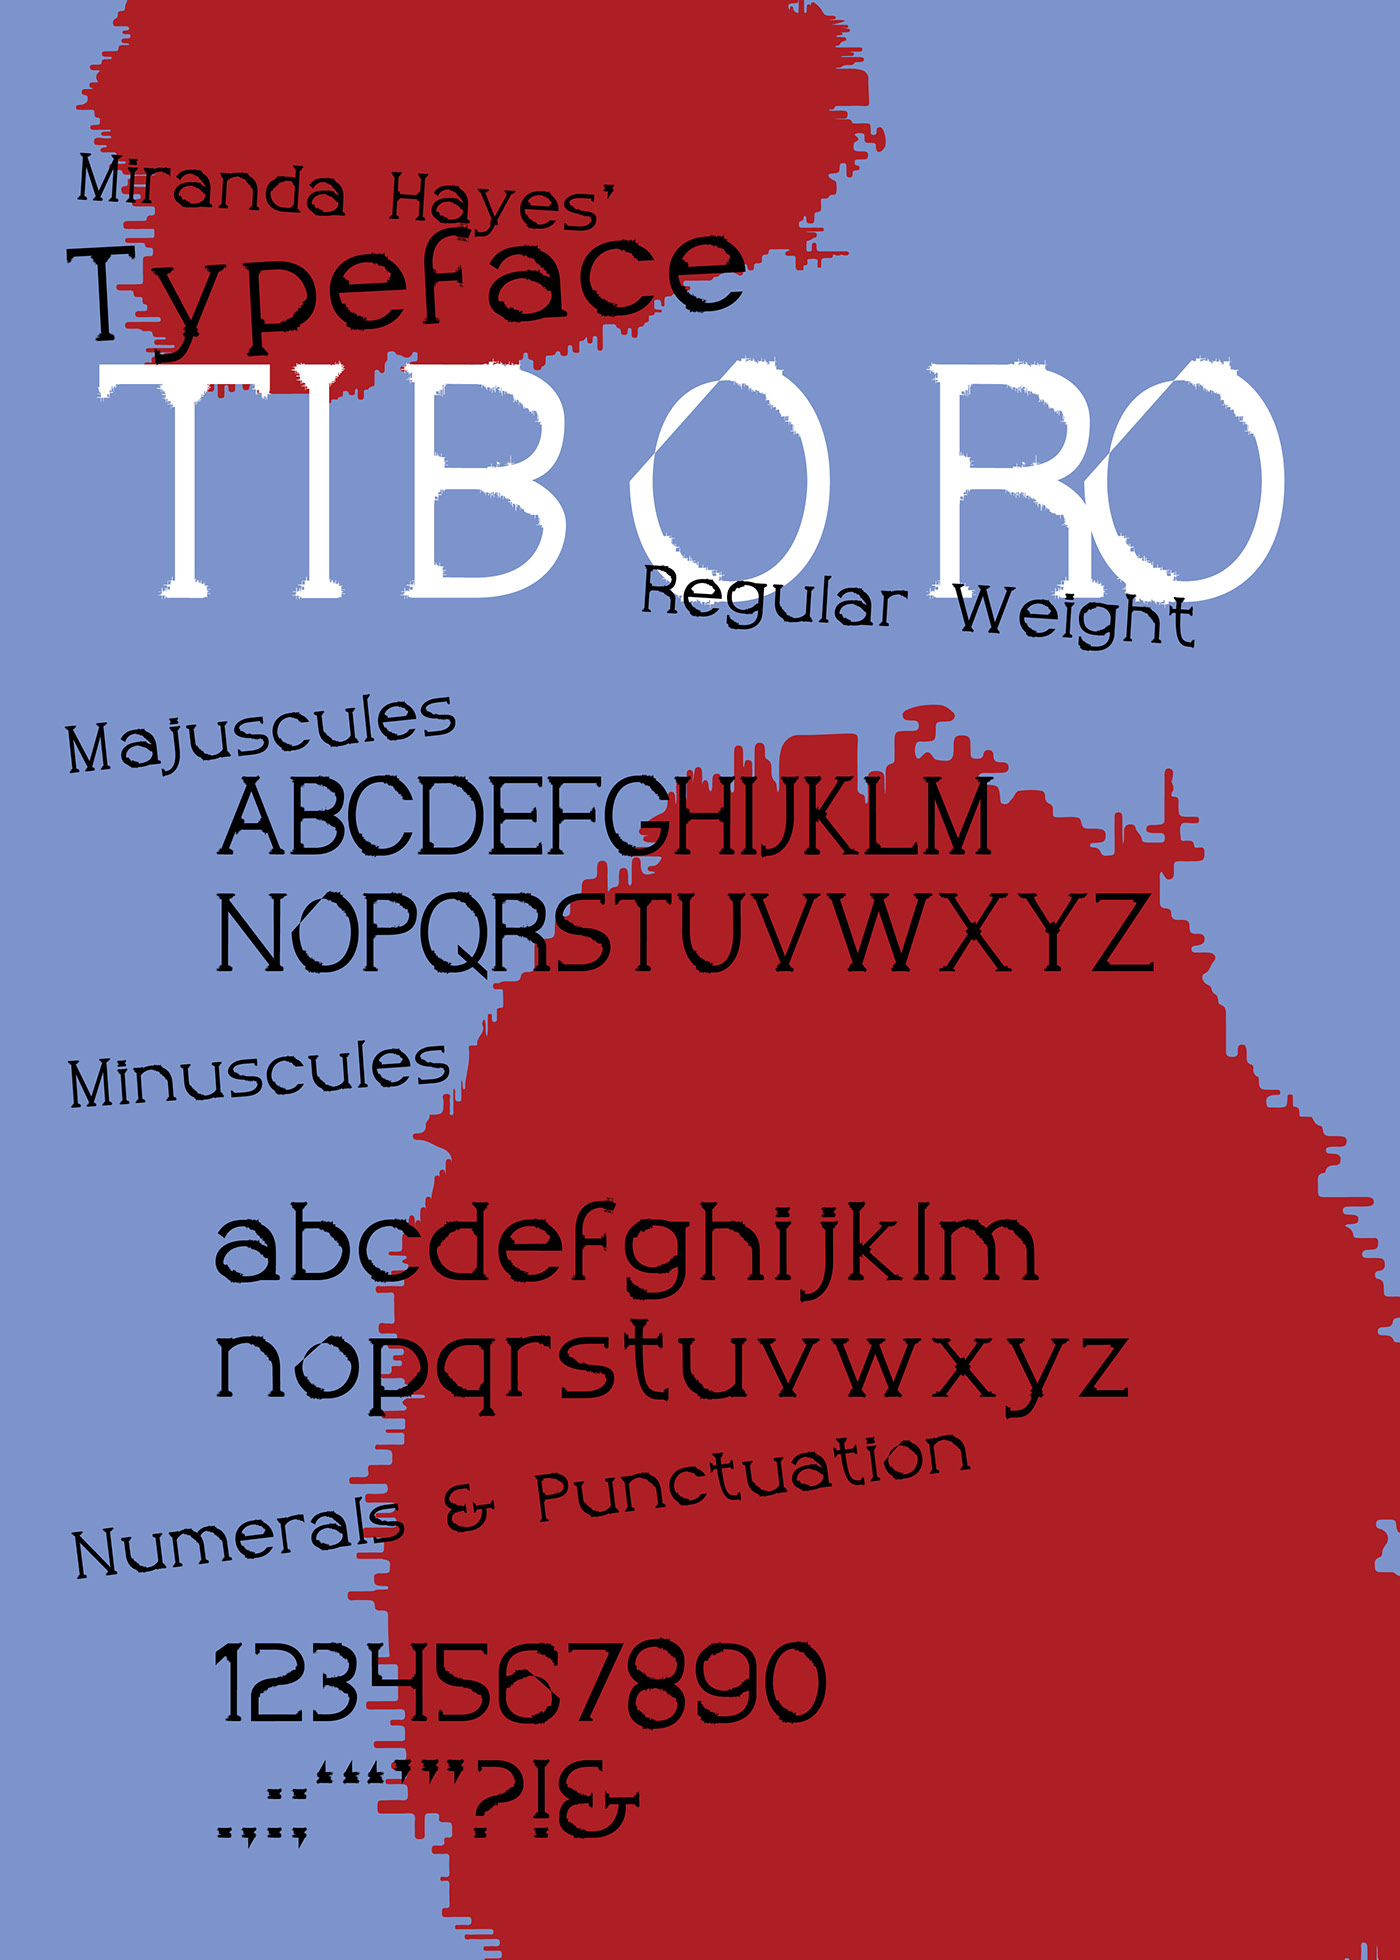 Typeface specimen kalman Tiboro